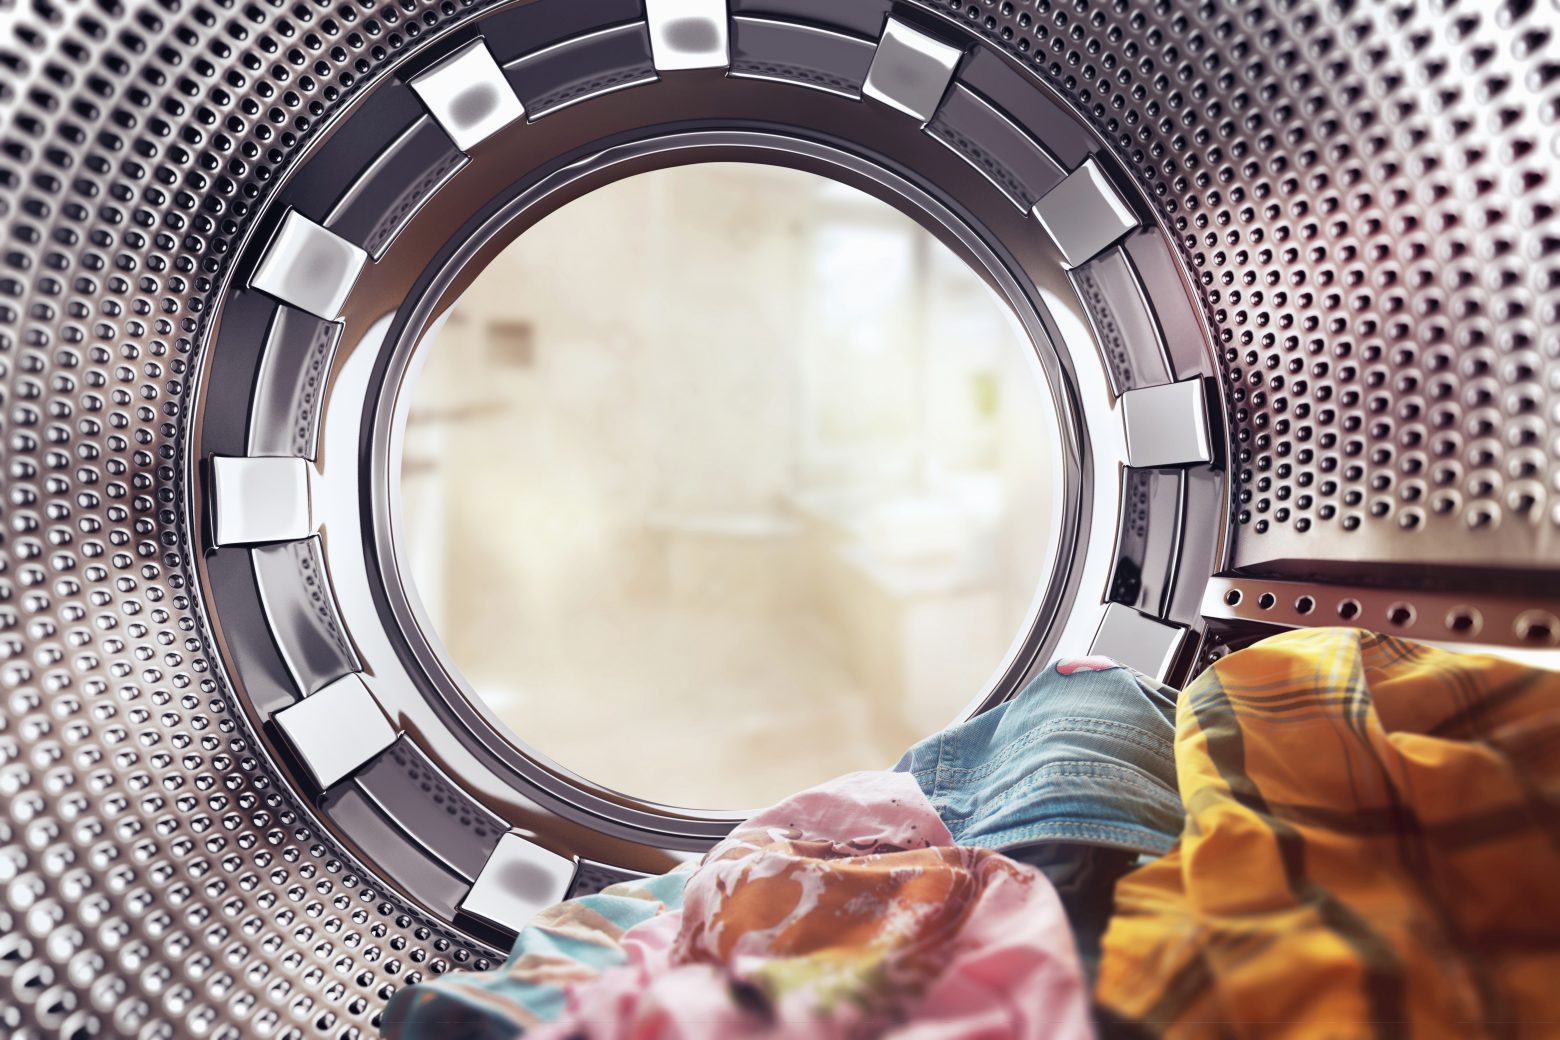 Το πλυντήριό σου θέλει καθάρισμα: Ο απόλυτος οδηγός για τη σωστή του συντήρηση